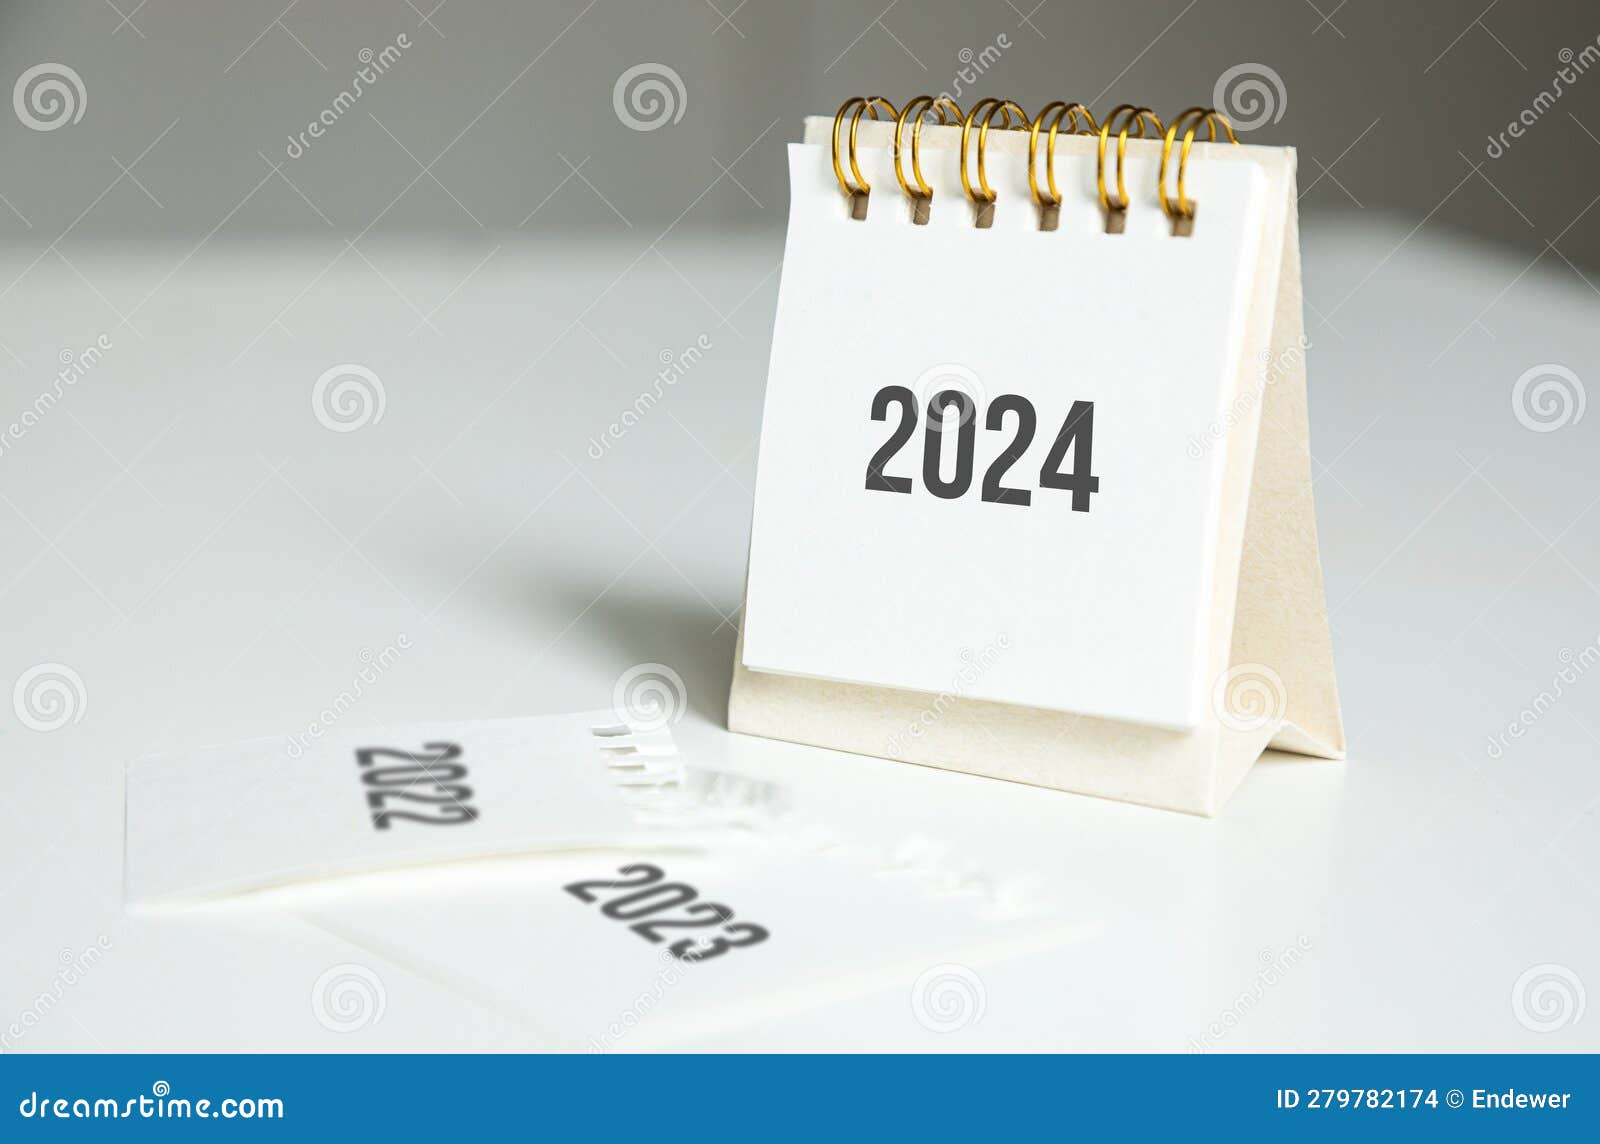 Calendrier De L'année 2024 Sur La Table De Bureau. Changement D'année De  2023 à 2024 Photo stock - Image du vacances, industrie: 279782174